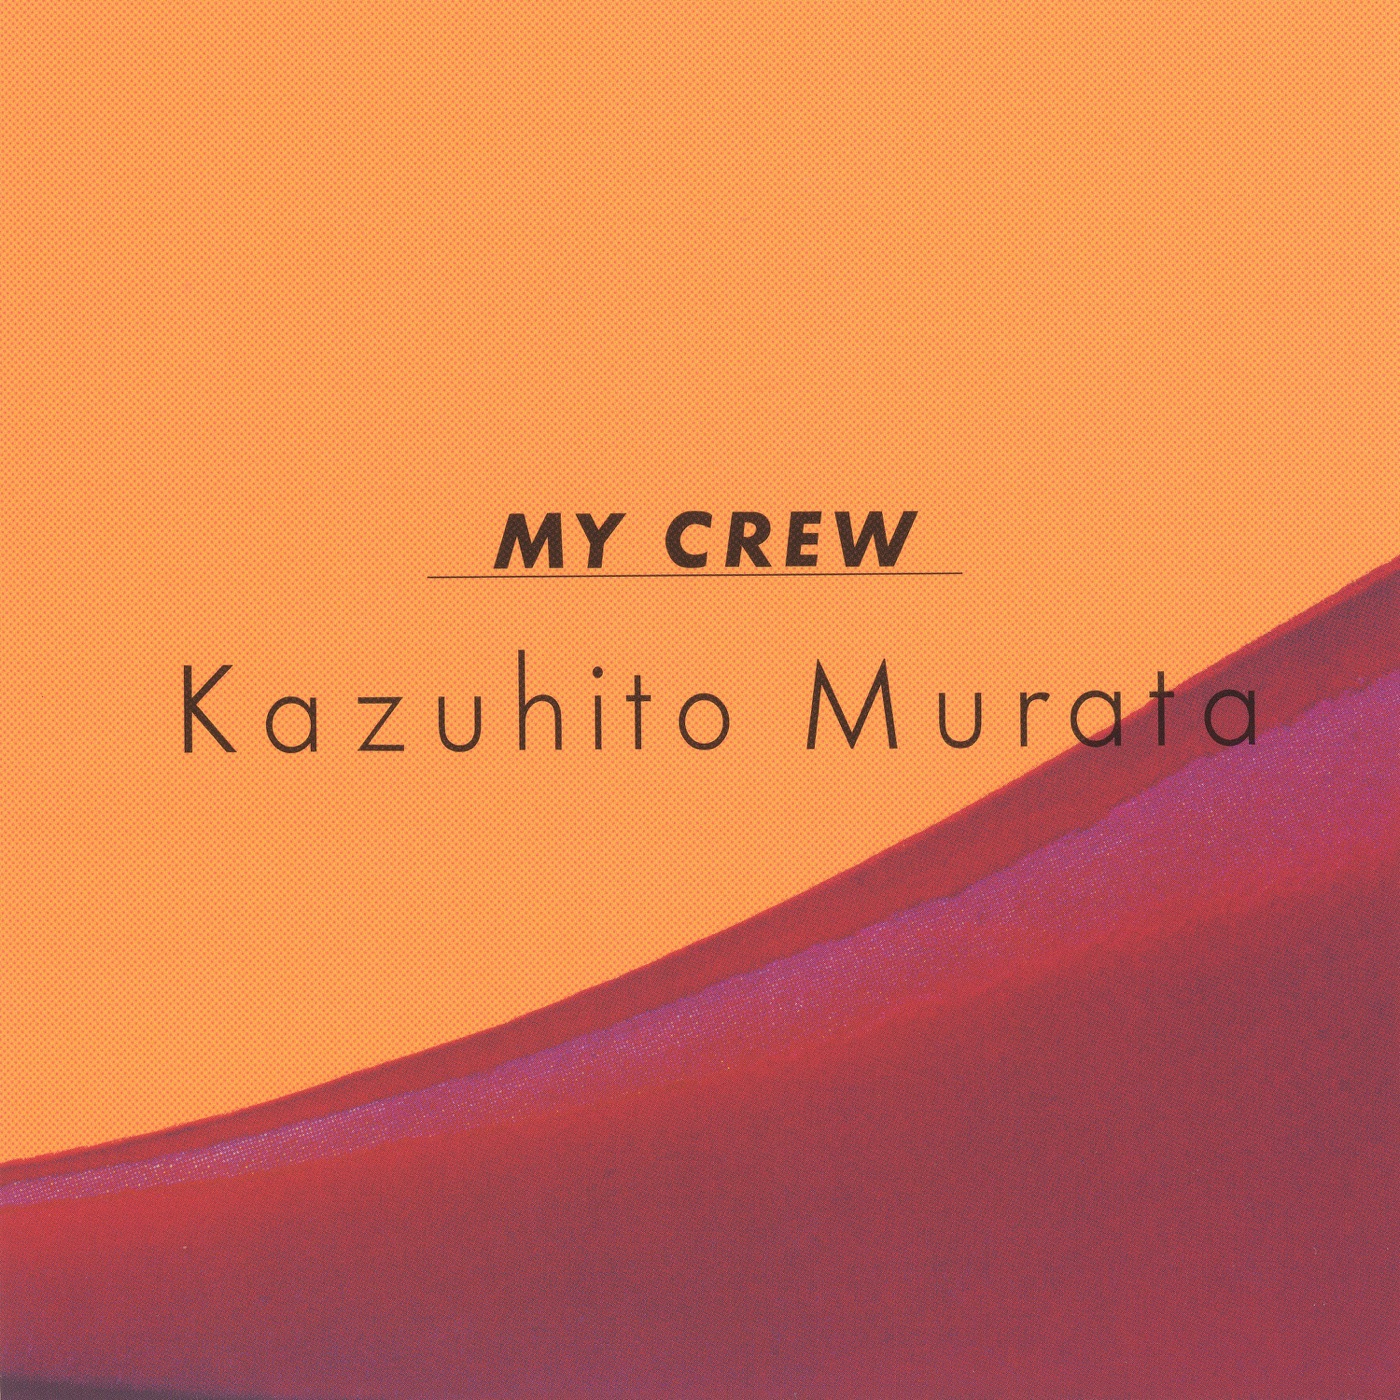 My Crew by Kazuhito Murata